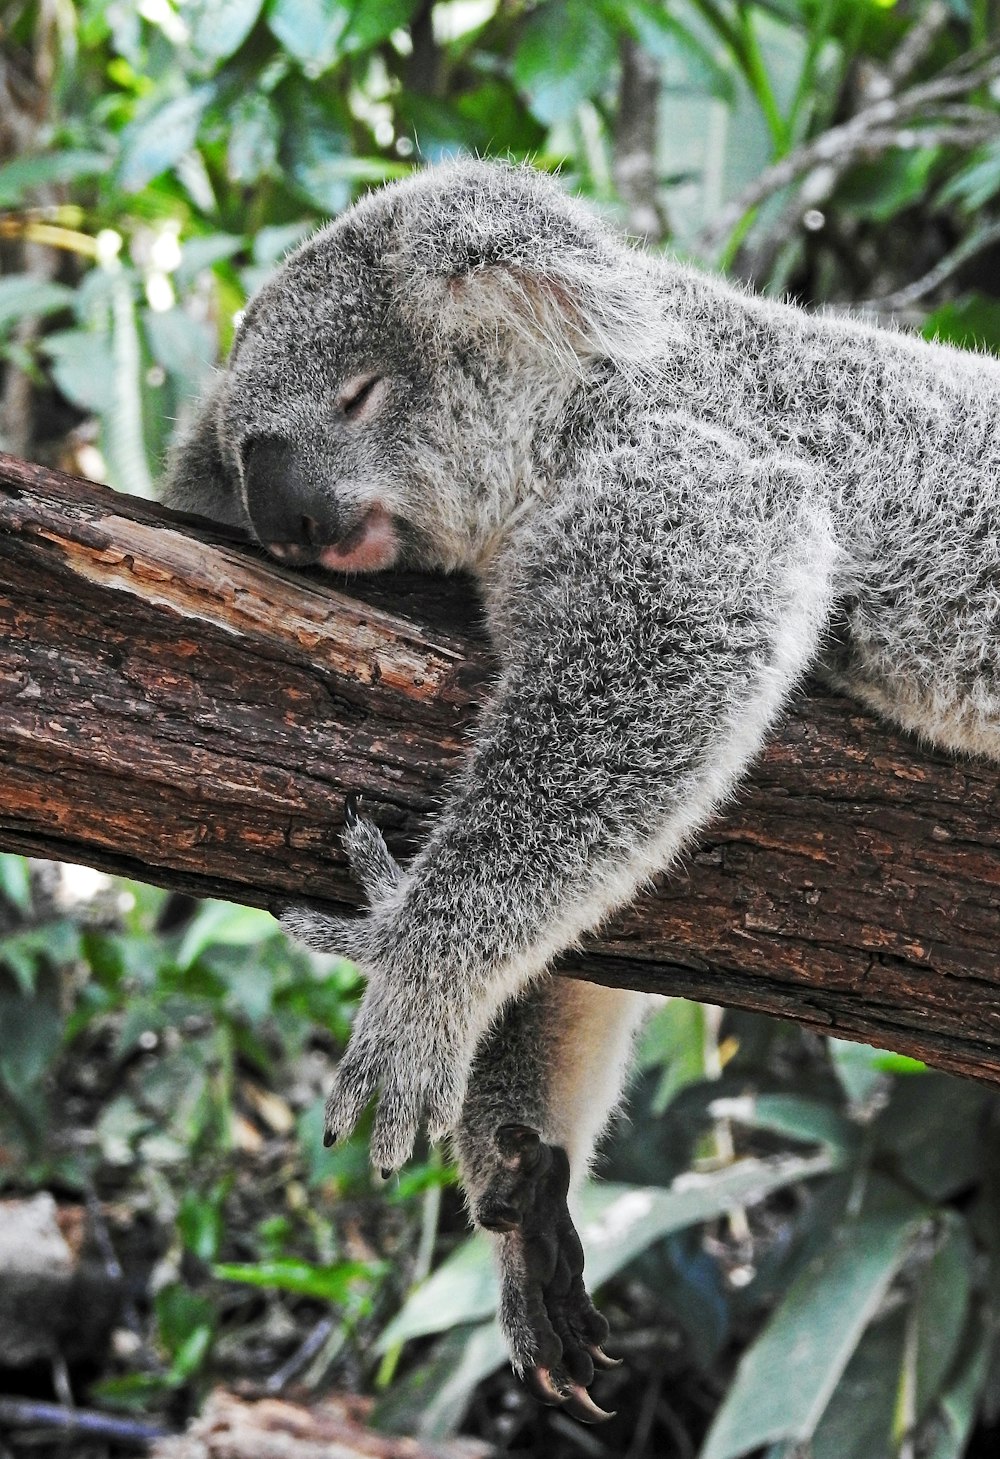 urso coala dormindo na árvore